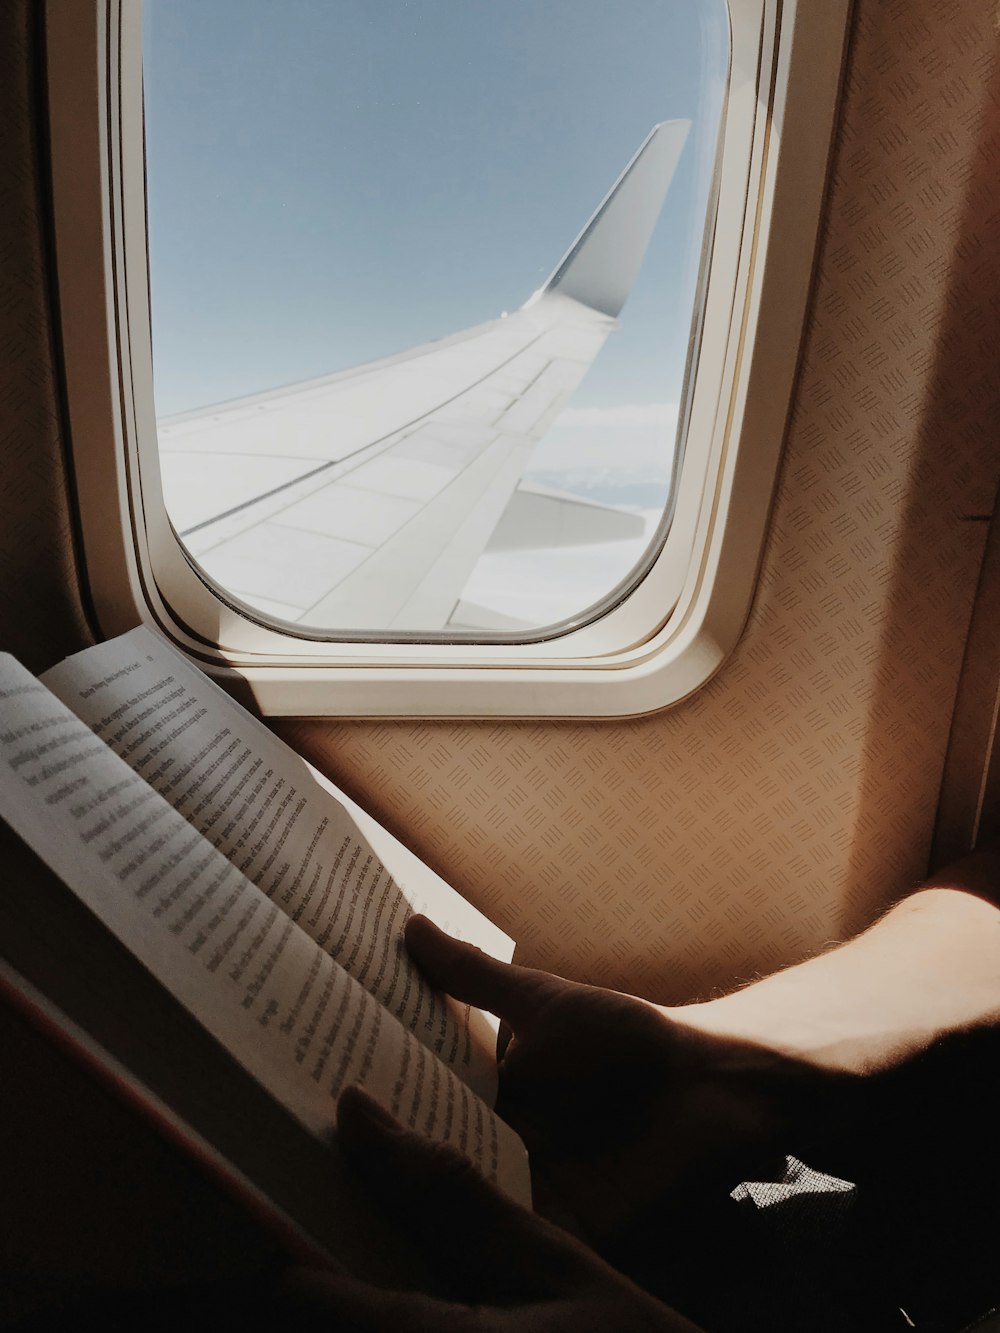 비행기 창가에서 책을 읽고 있는 사람